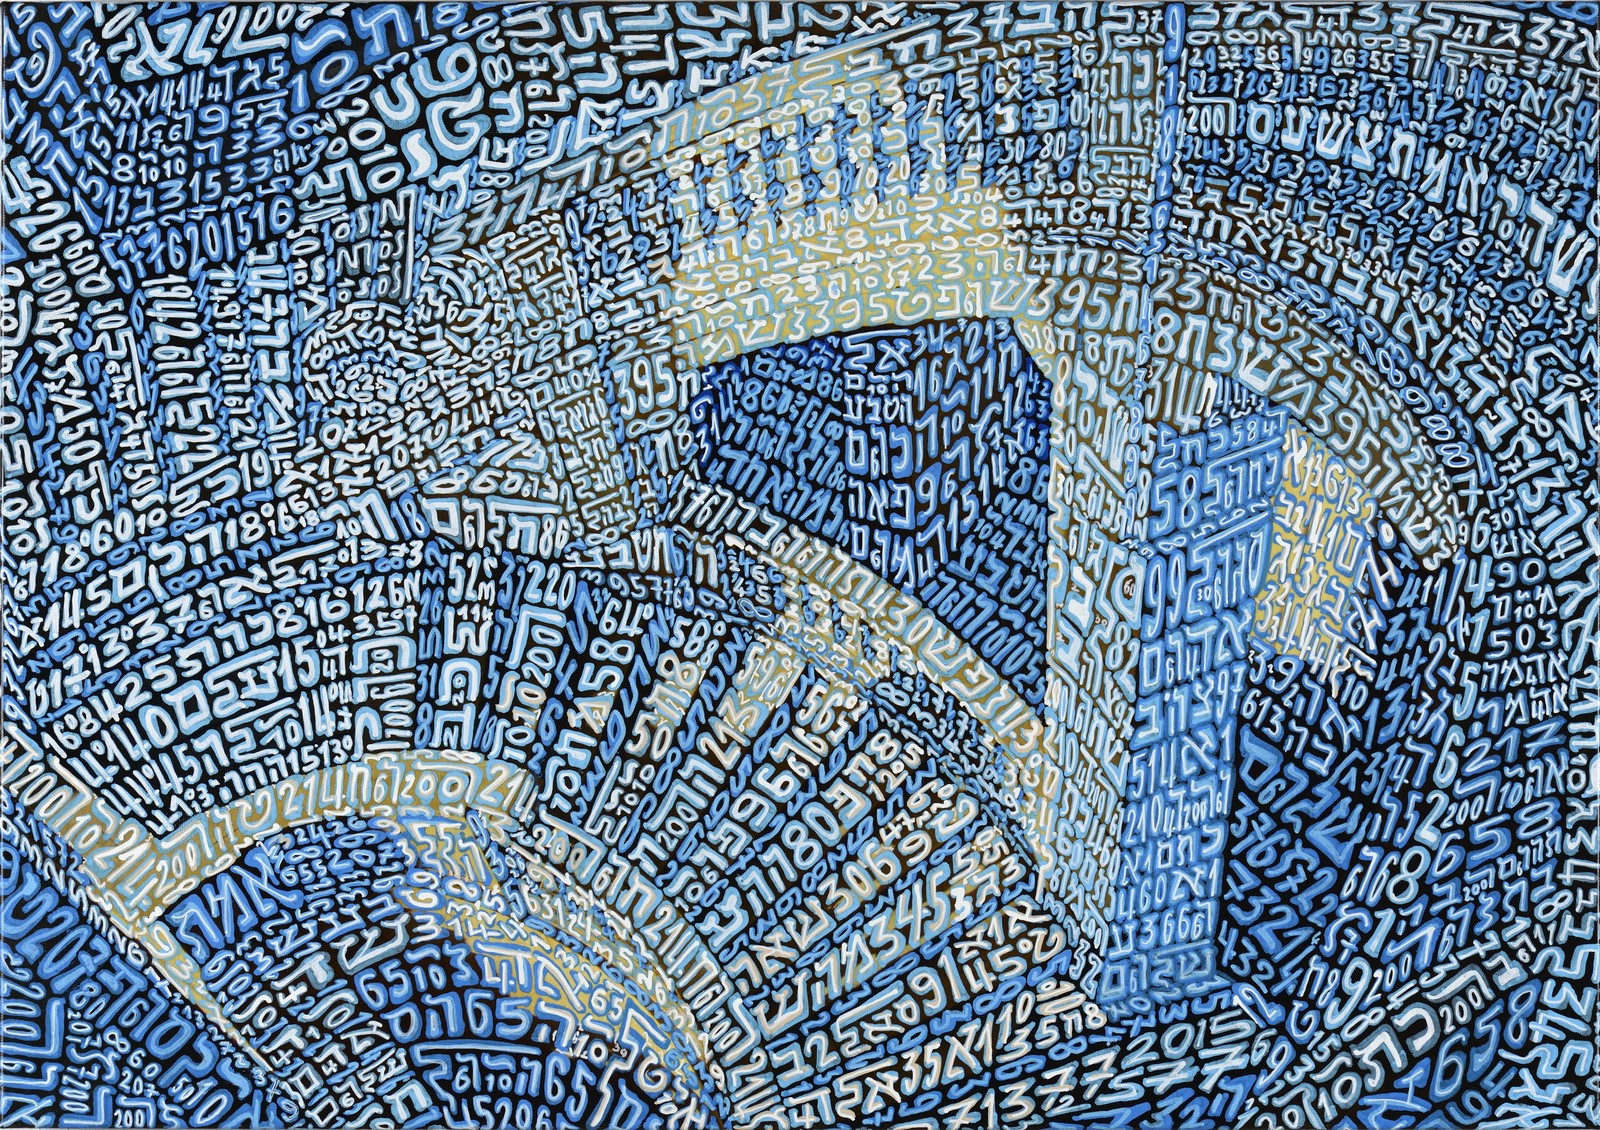 Tobia Ravà, Sullam, sequenze in scala, 2015, resine e tempere acriliche su tela, cm 50 x 70, courtesy Galleria Zabert Torino, foto Amedeo Fontana